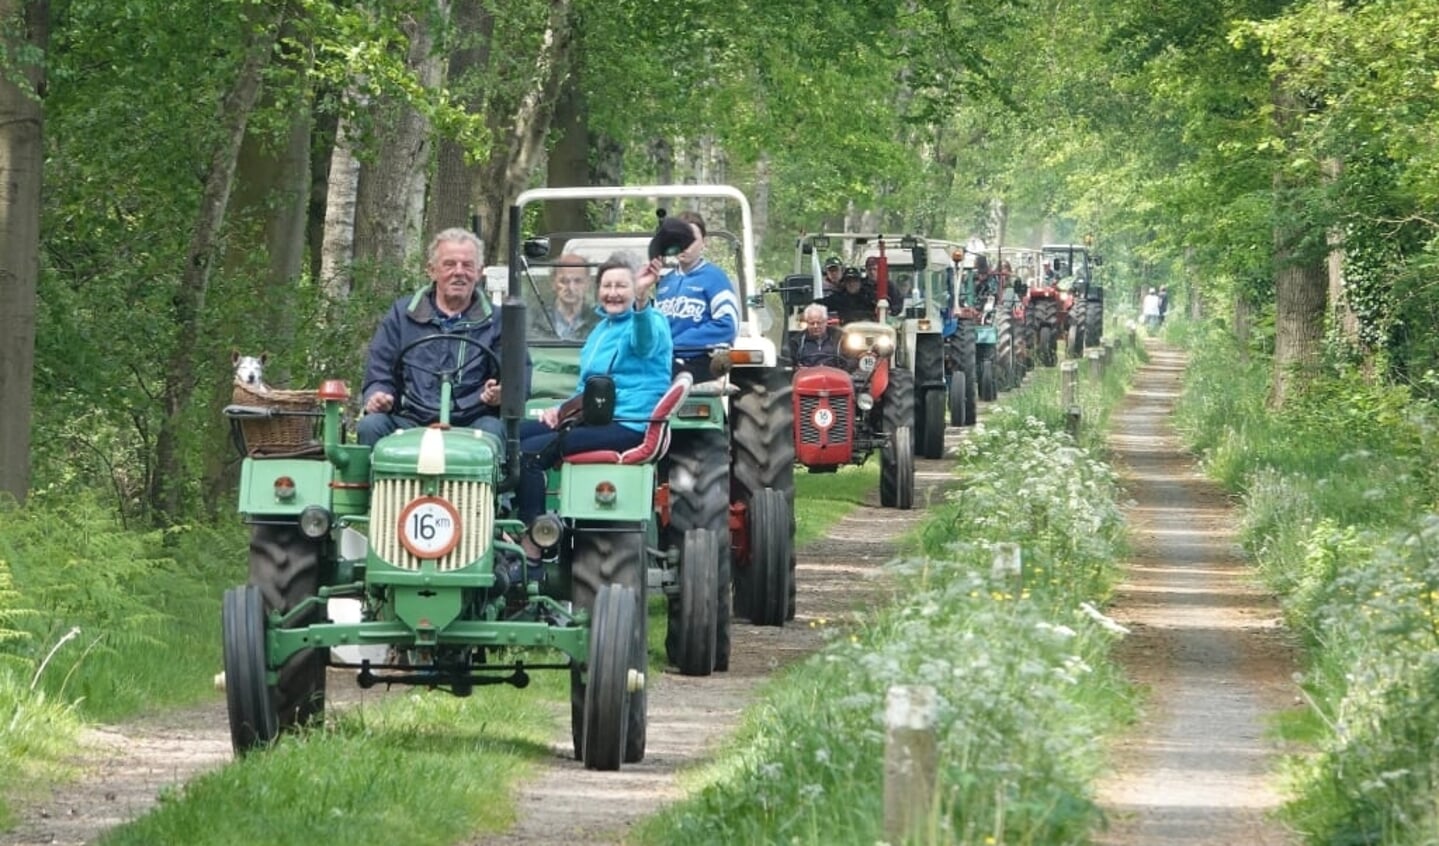 Onder leiding van Bennie en Bertha Hanskamp namen bijna tachtig oldtimer tractoren deel aan de oldtimertoertocht. Foto: Achterhoekfoto.nl/ Gradus Derksen